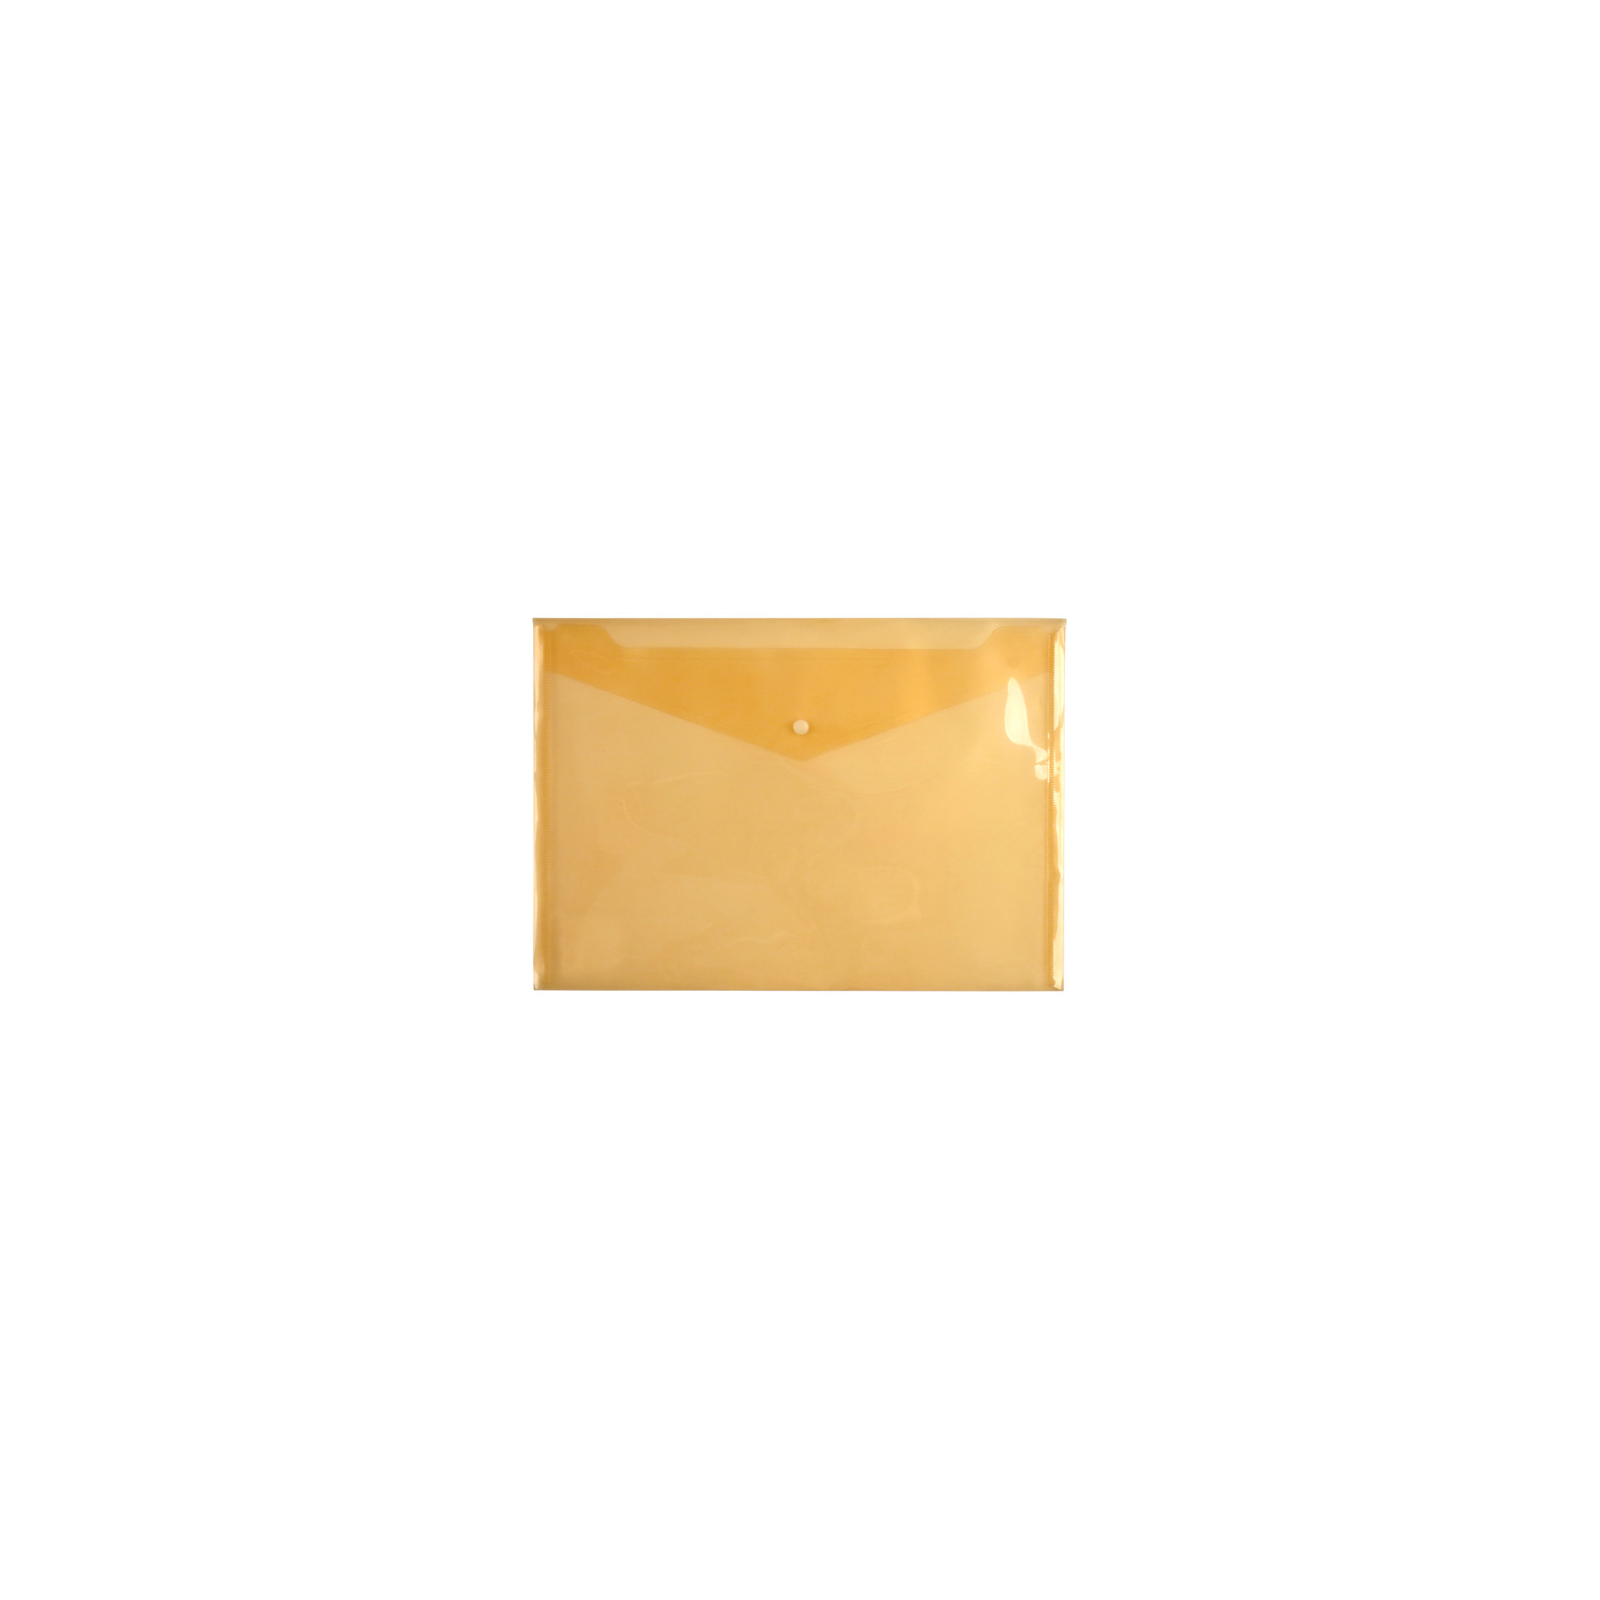 Папка - конверт Axent А4, glossy, orange (1402-26-А)